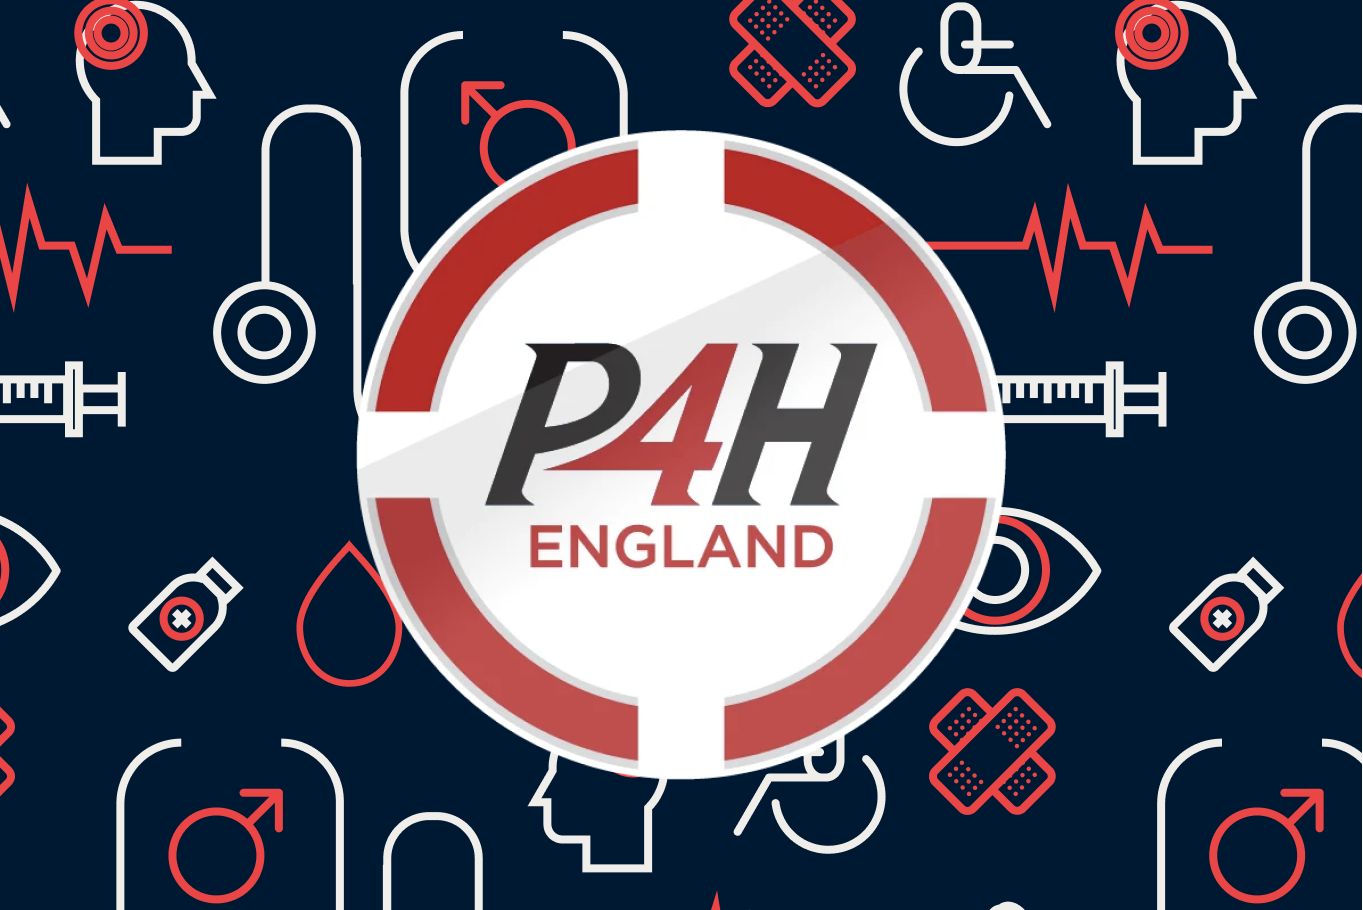 Logo of the P4H England event.